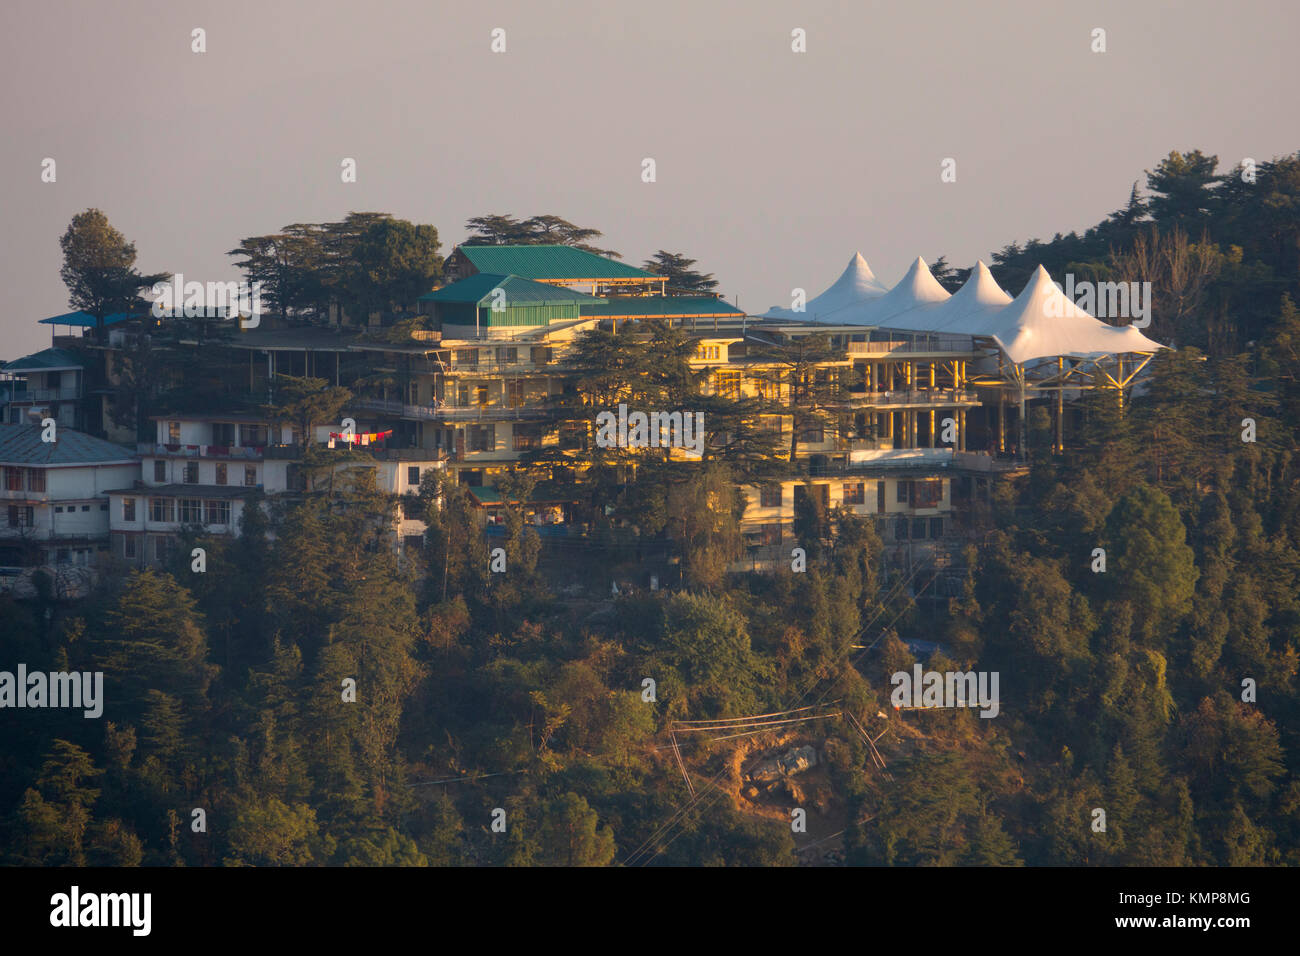 Dalai lama residence immagini e fotografie stock ad alta risoluzione - Alamy